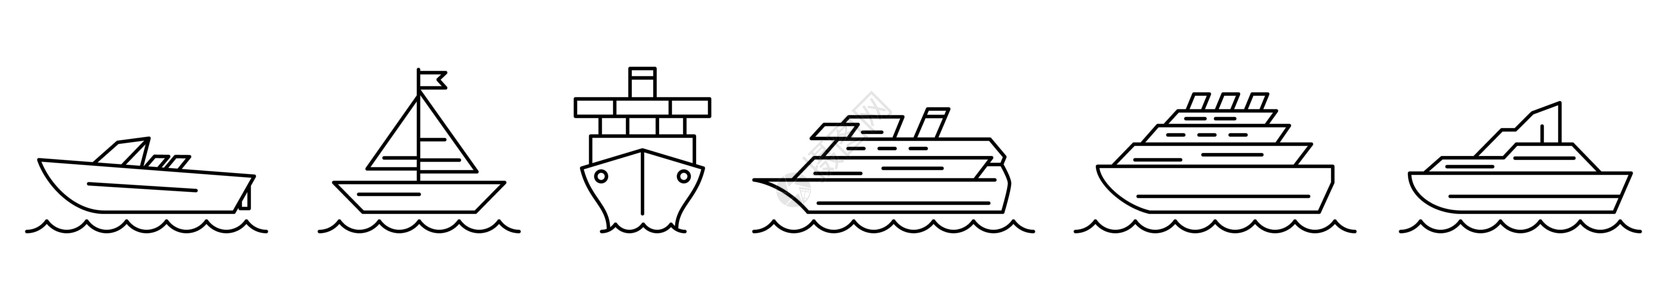 船舶图标 船图标集 航运或邮轮线性图标图片